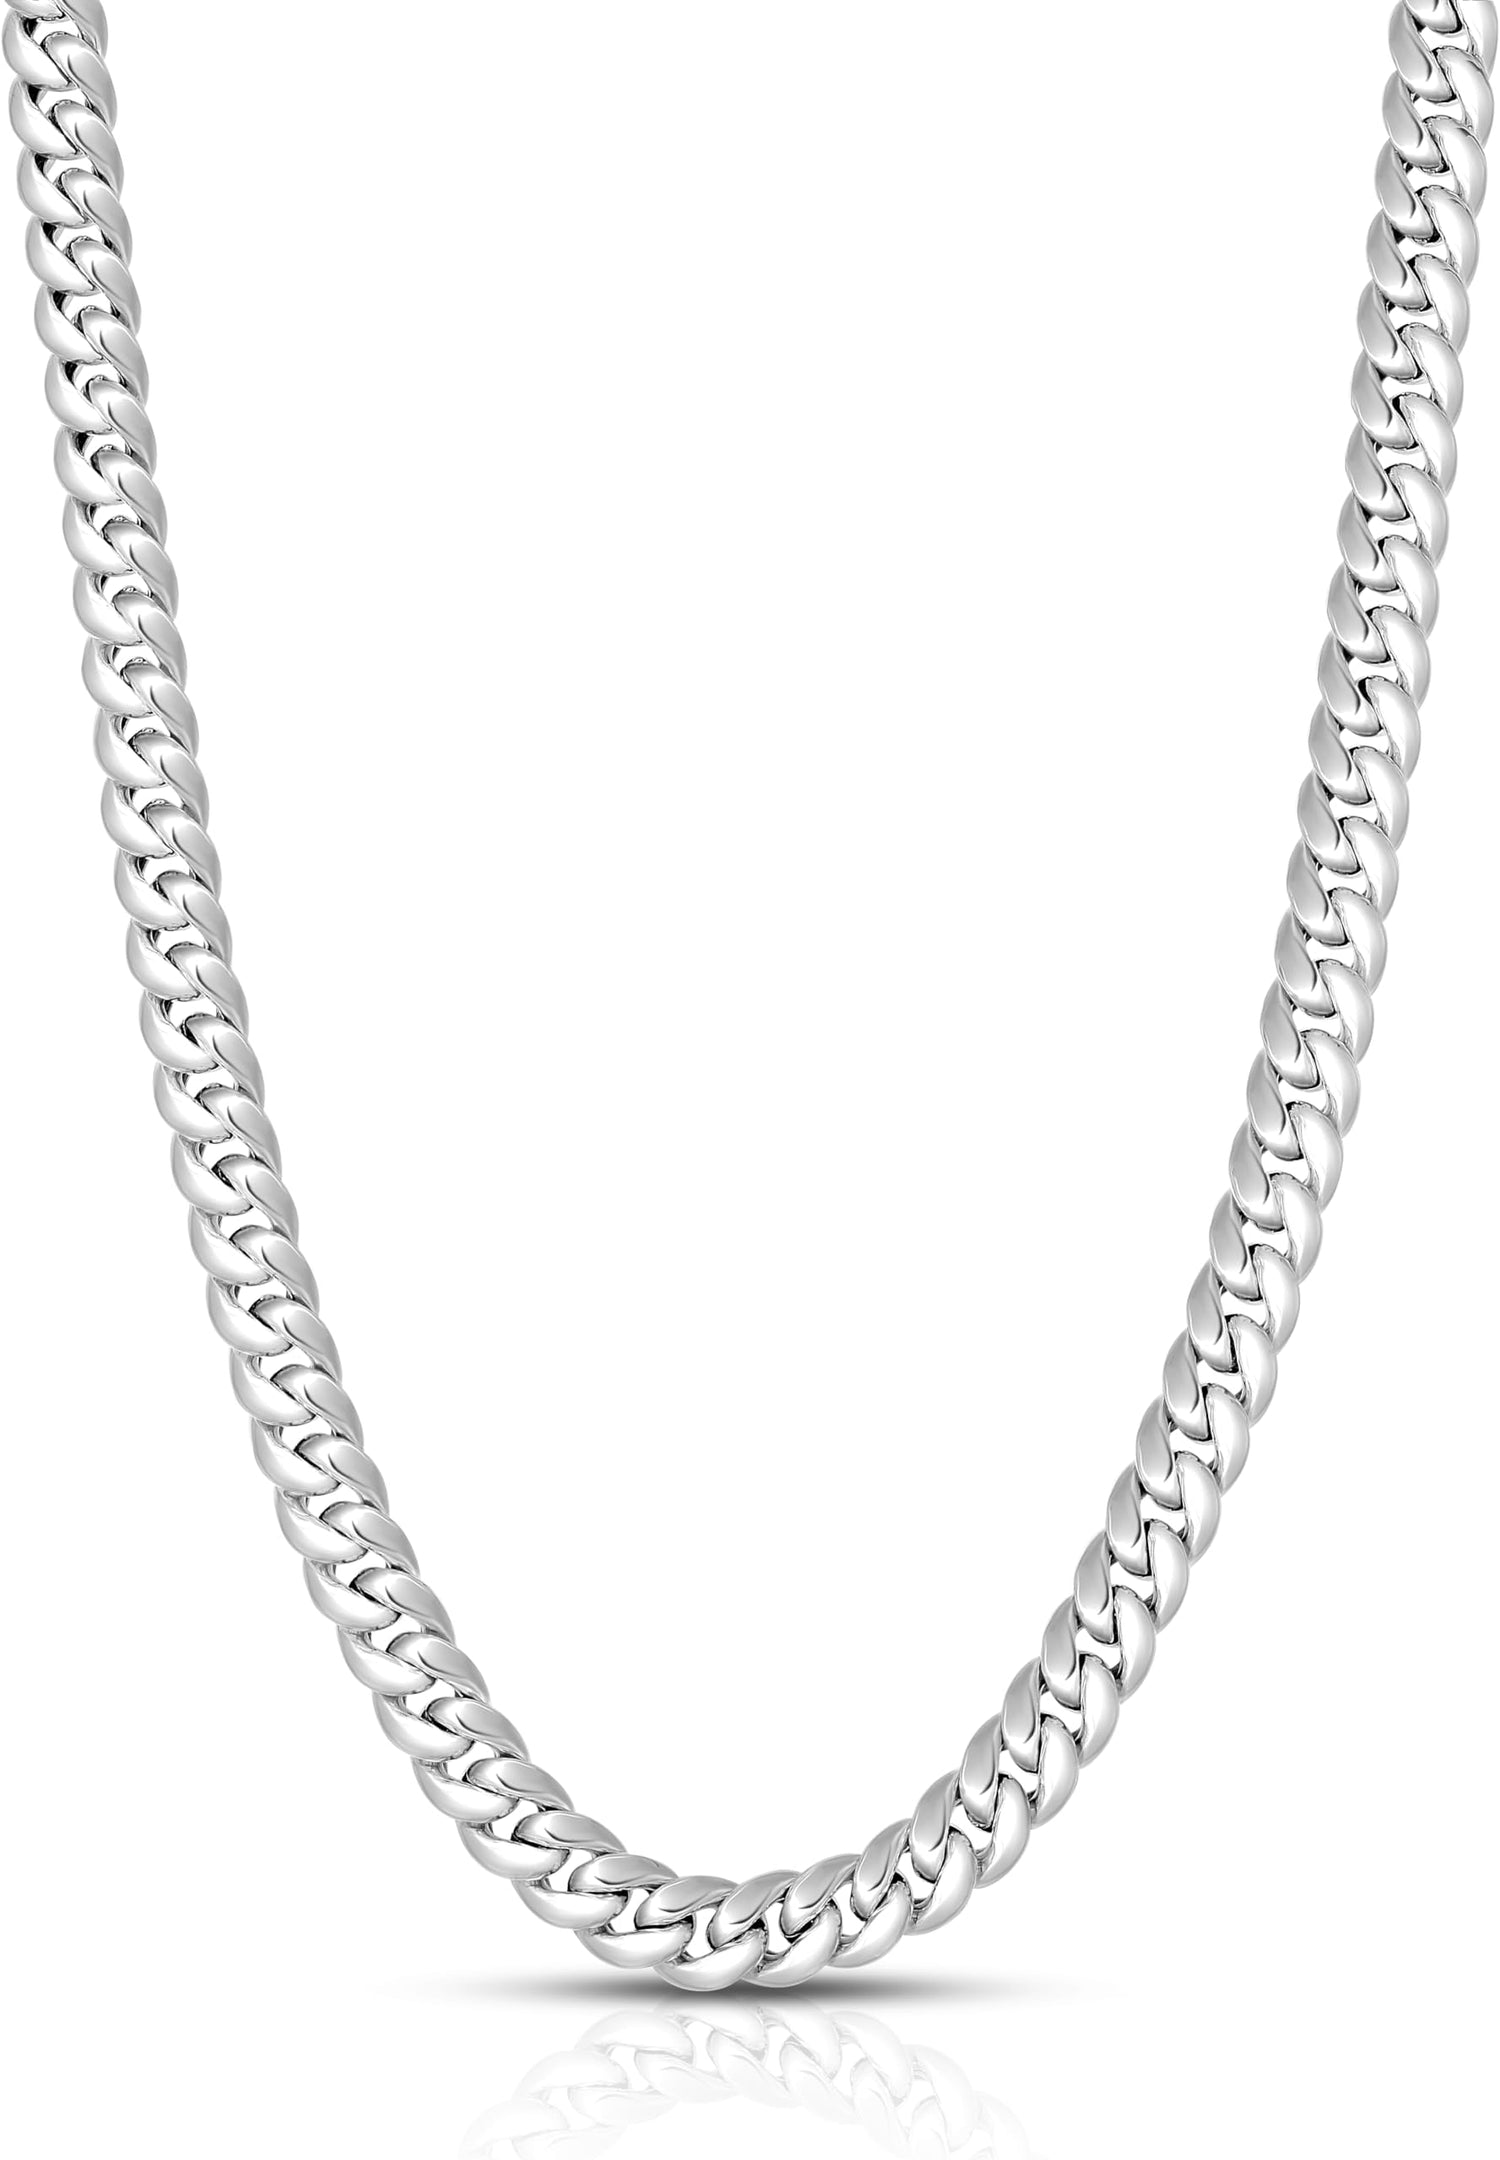 10k White Gold 7.3mm Semi-Lite Miami Cuban Chain Necklace